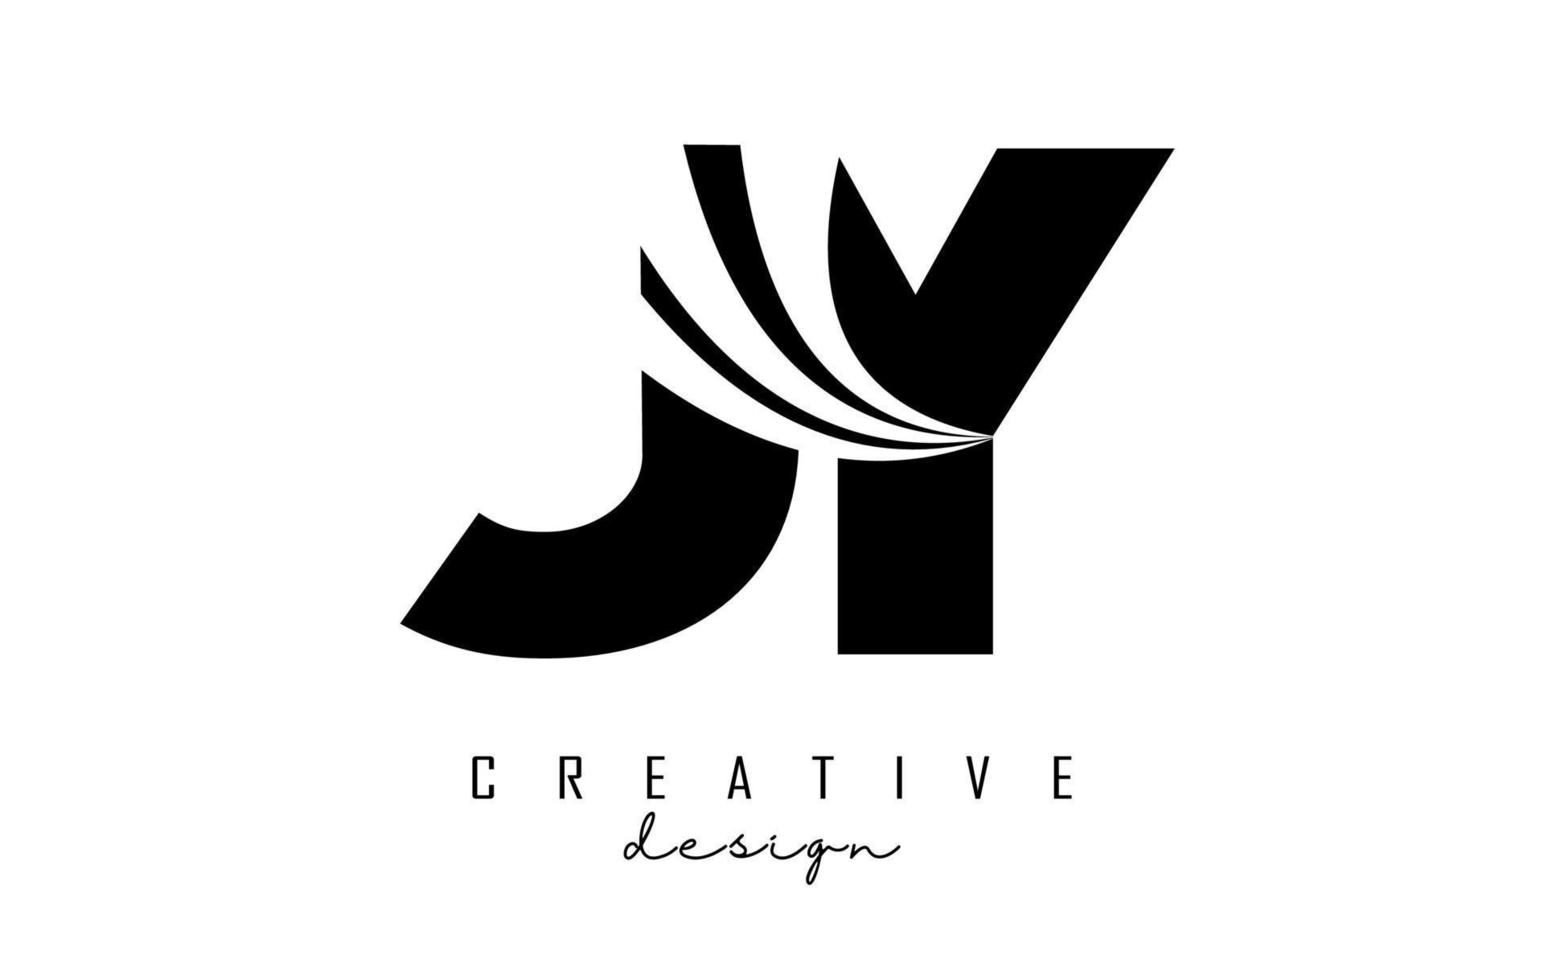 Logotipo creativo de letras negras jy jy con líneas principales y diseño de concepto de carretera. letras con diseño geométrico. vector